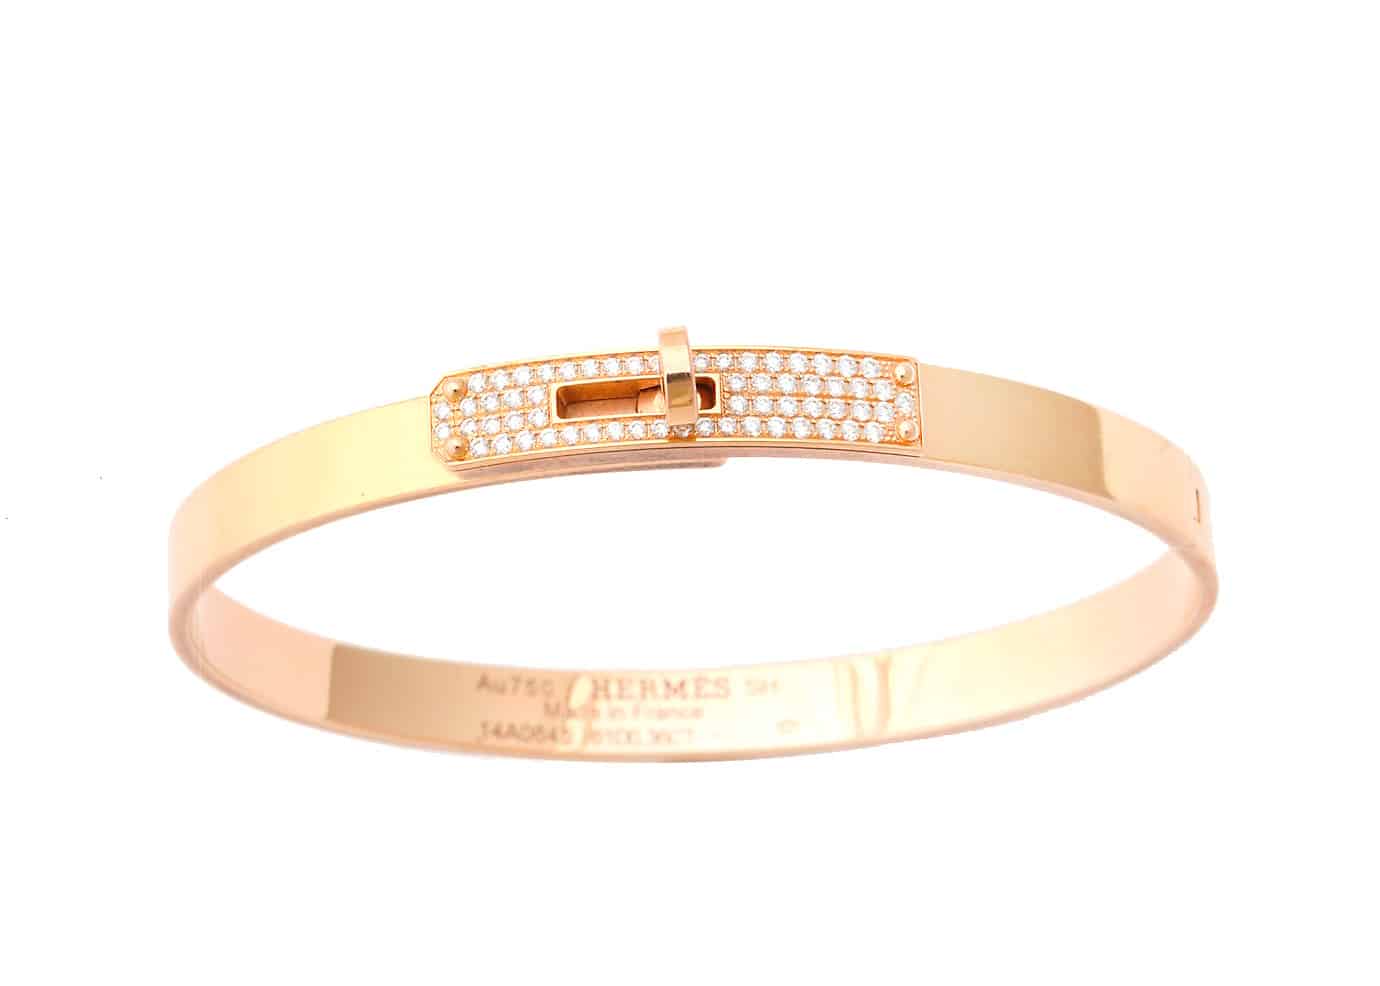 hermes kelly bracelet in 18k rose gold | dkfarnum